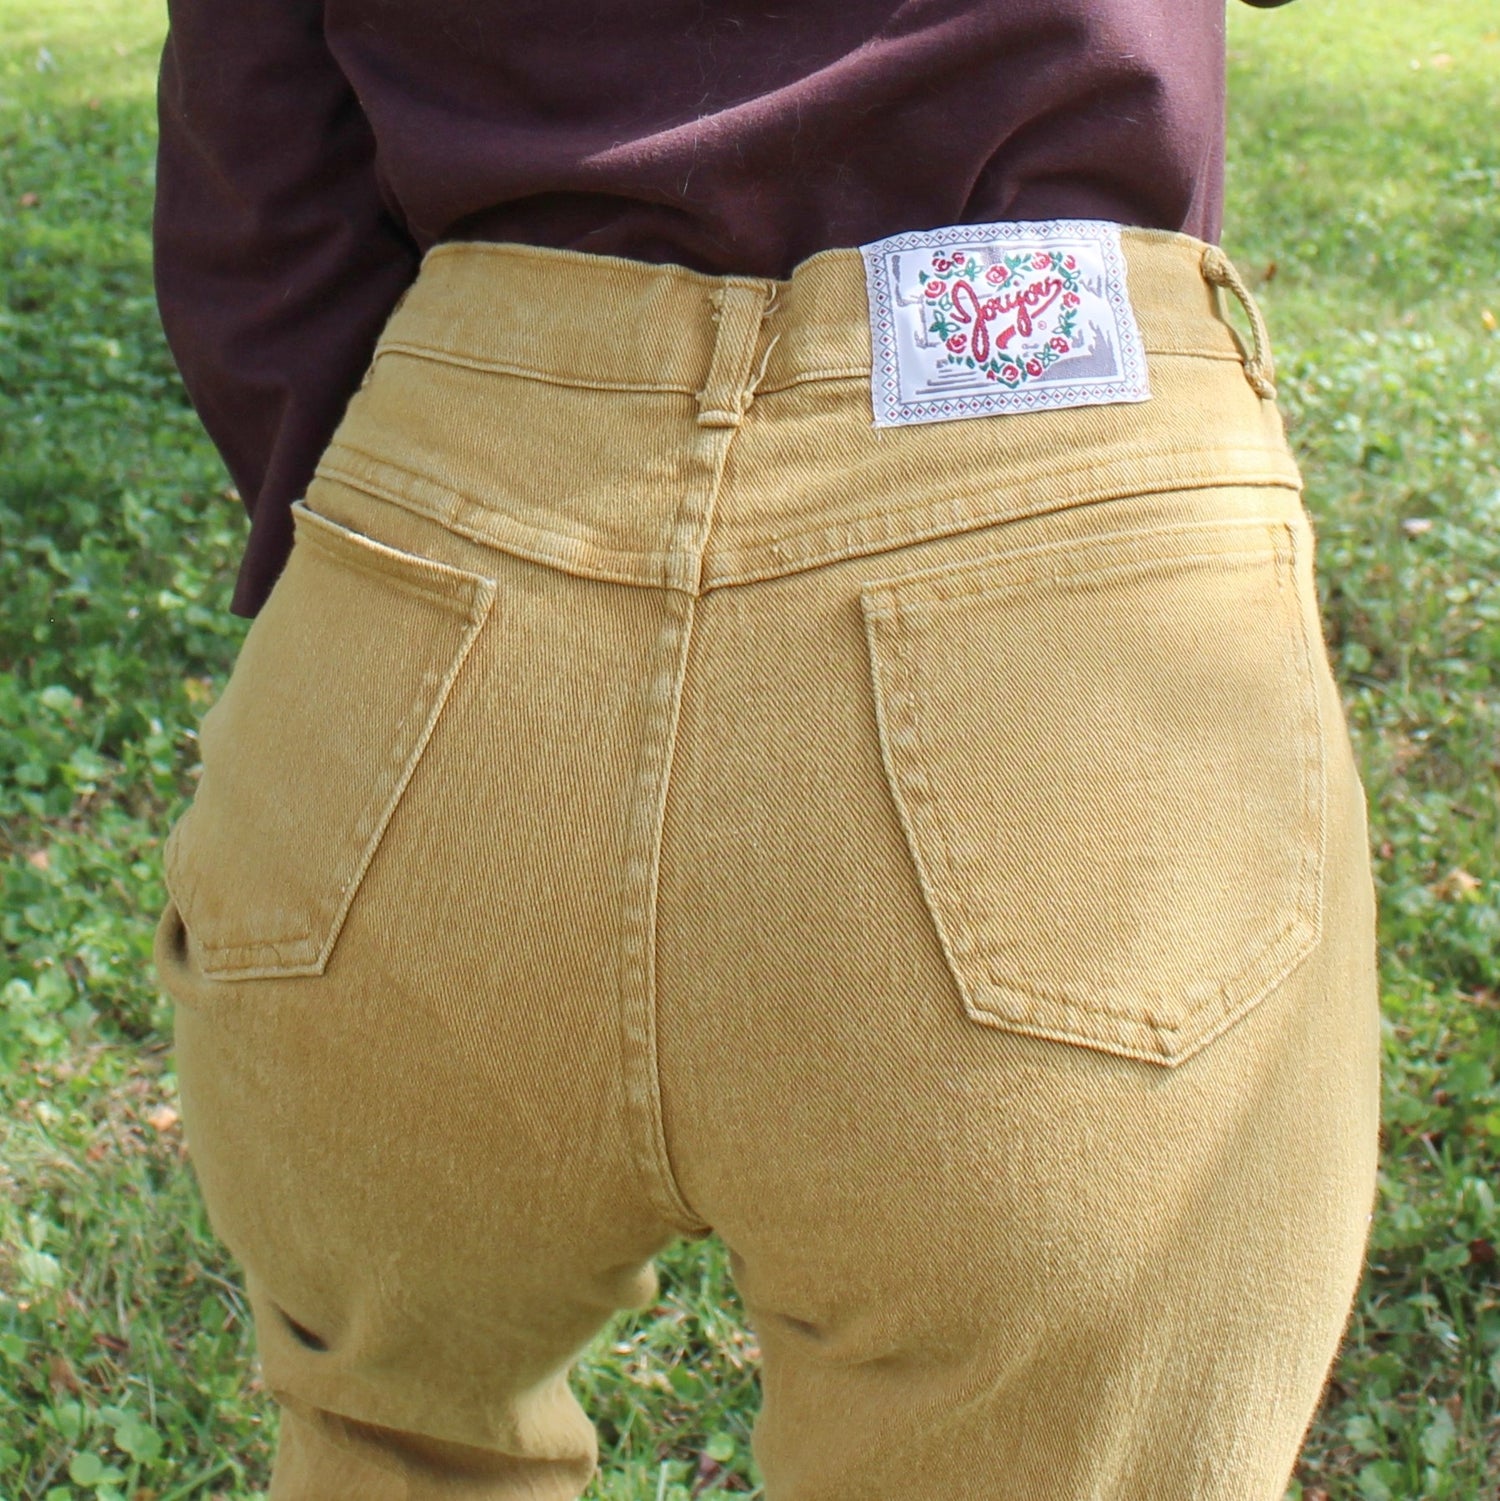 Vintage 90s / y2k khaki flare pants. Very low rise. - Depop